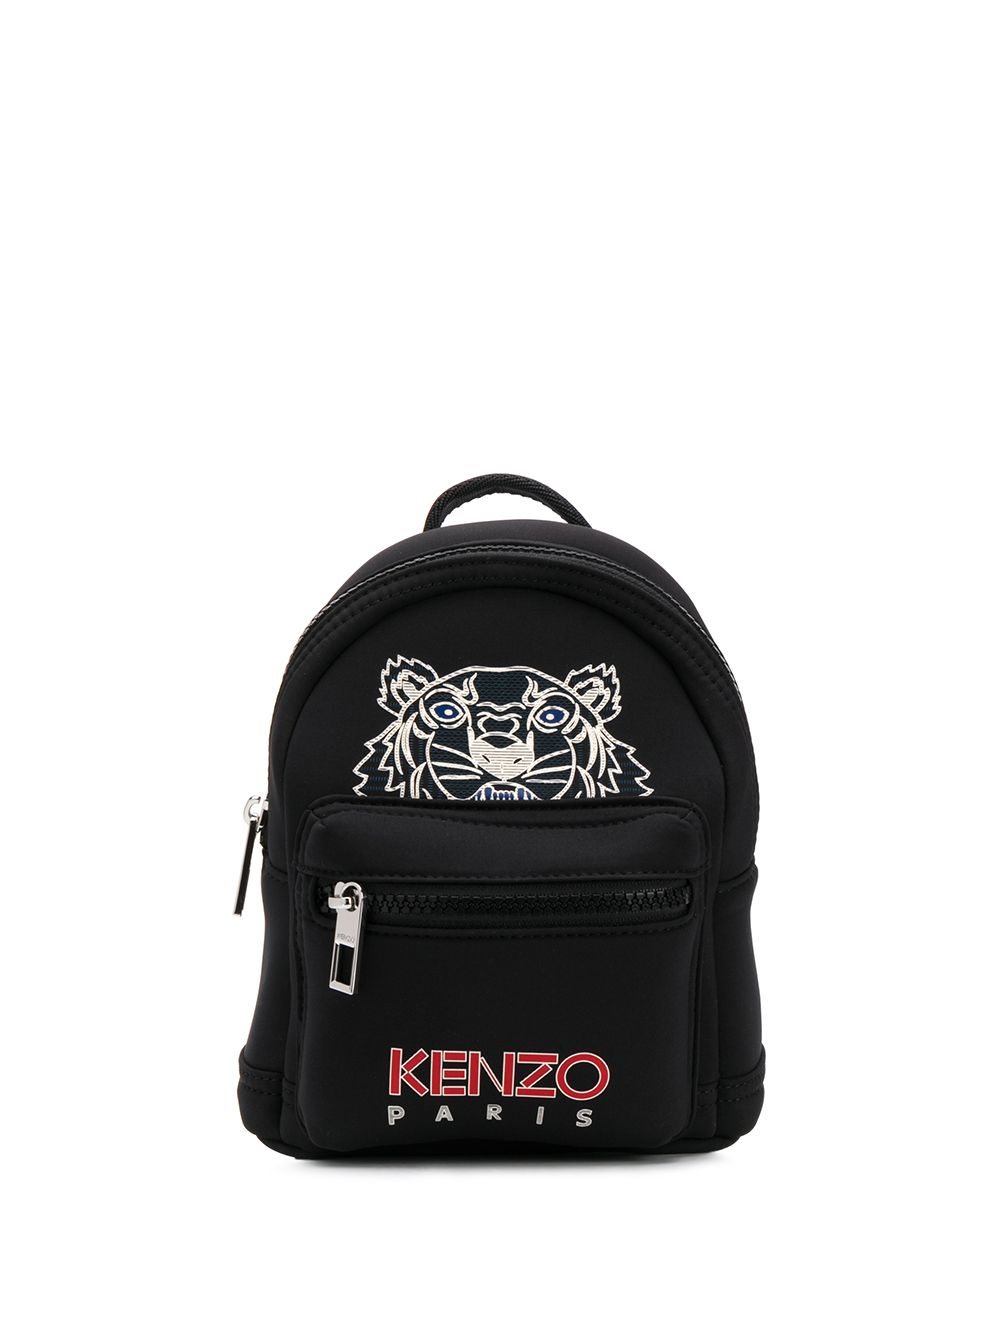 фото Kenzo мини-рюкзак tiger